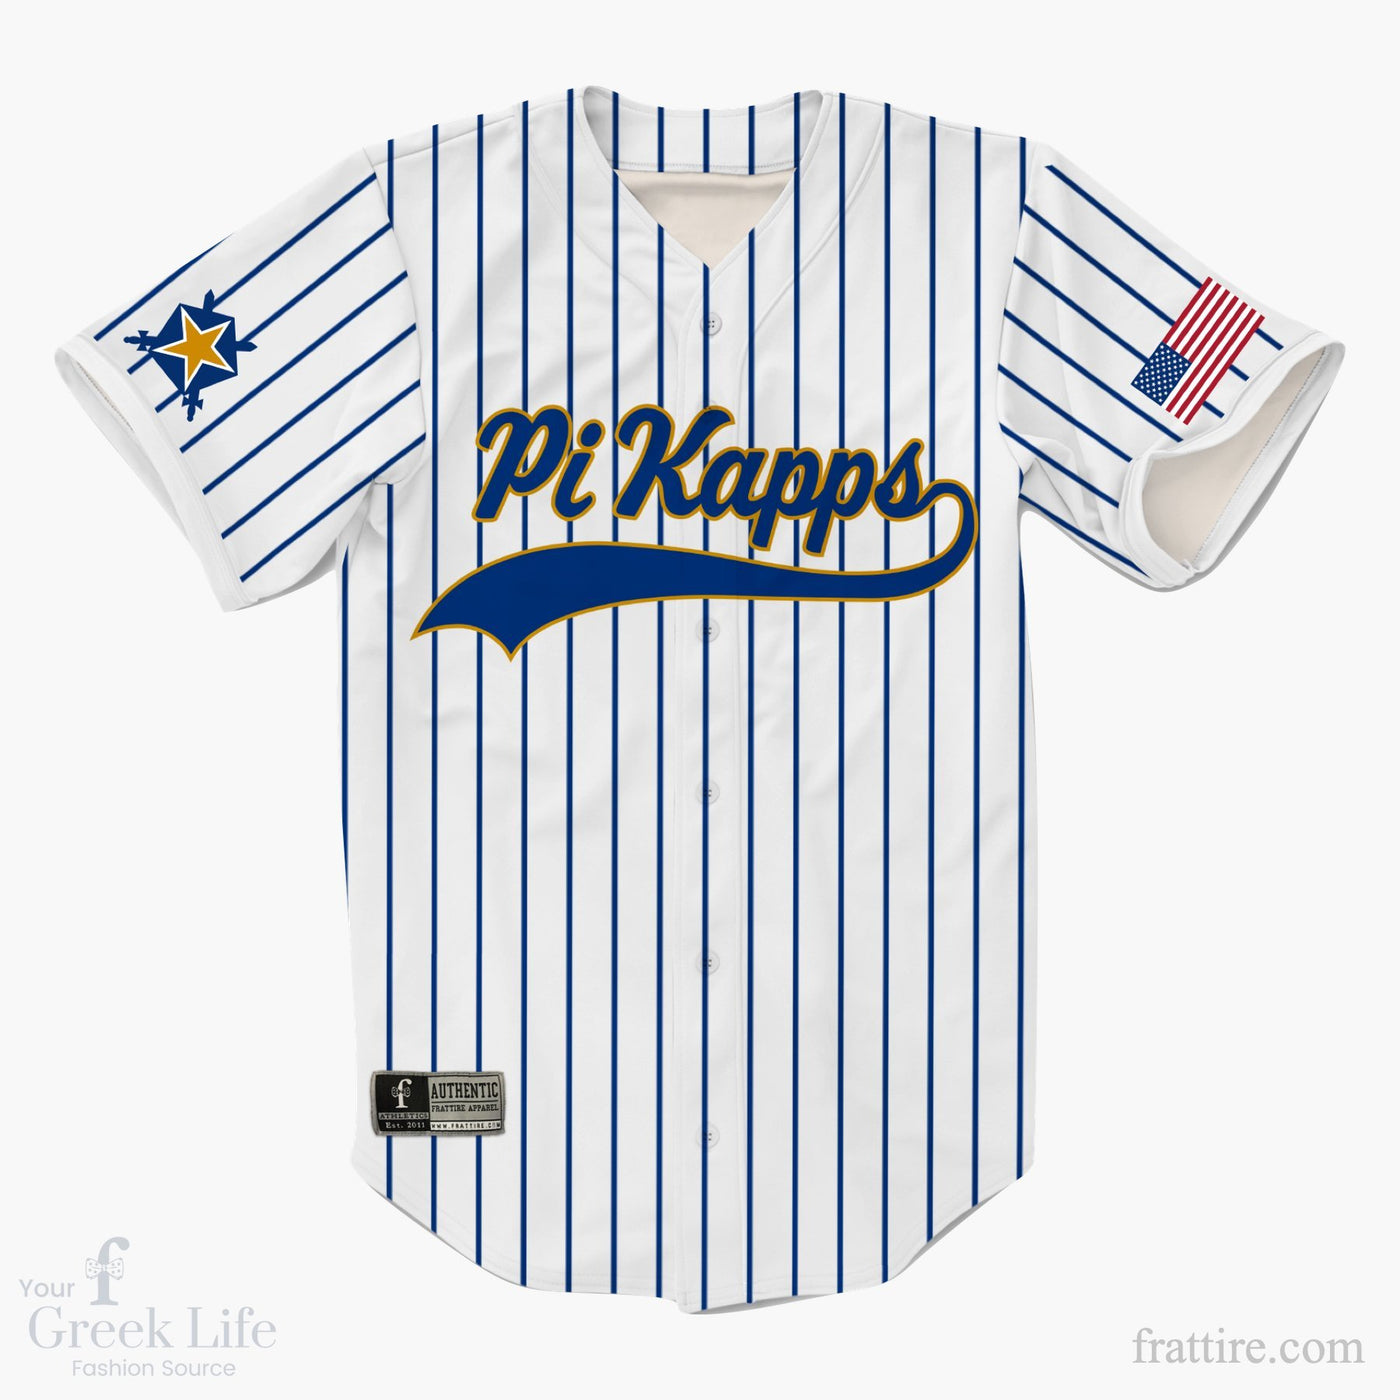 Pi Kappa Phi Baseball Jerseys